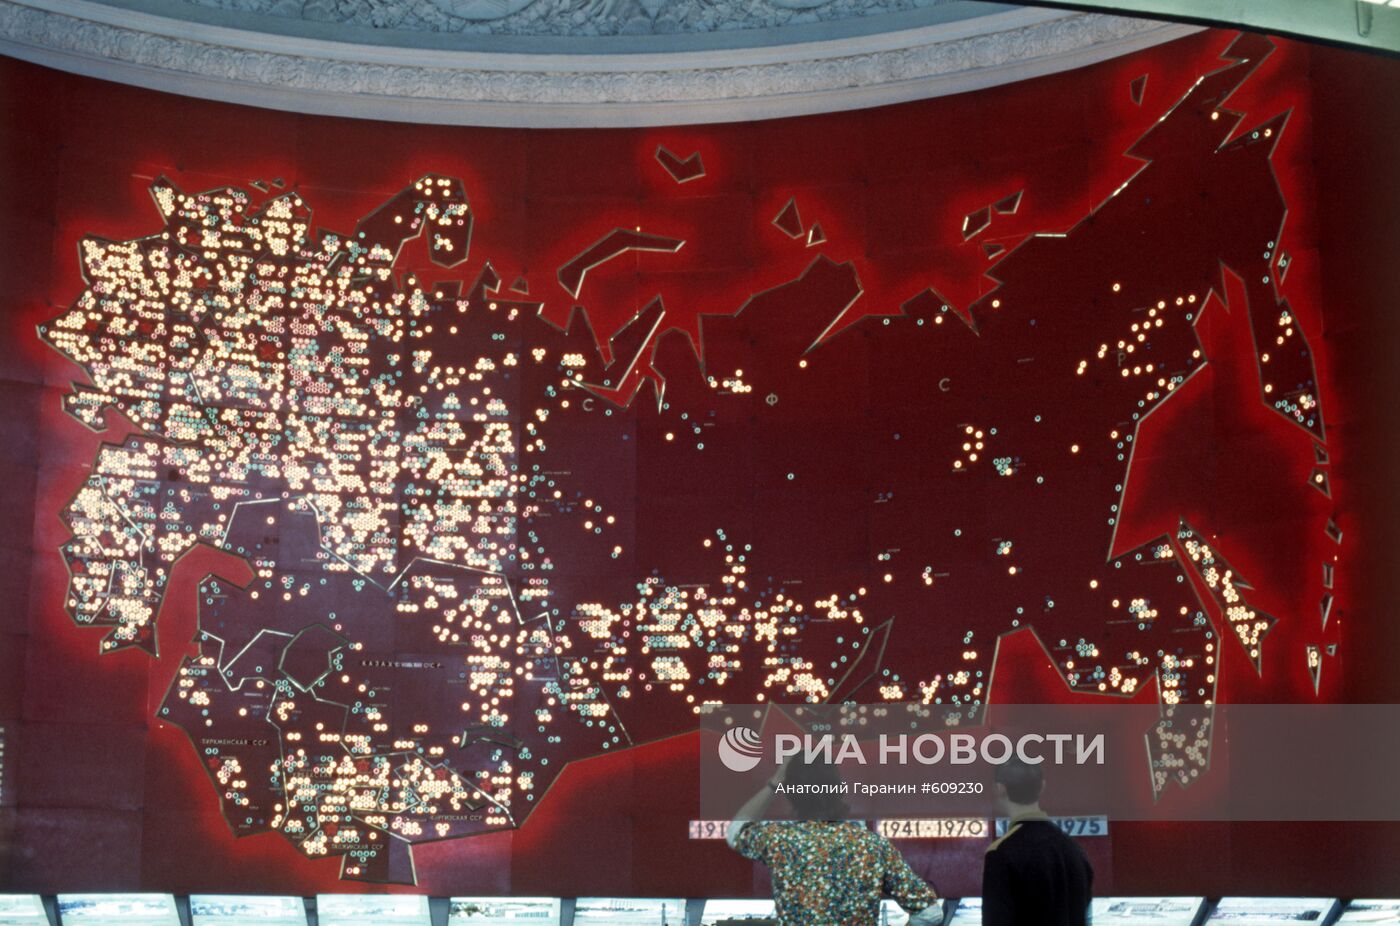 Карта СССР